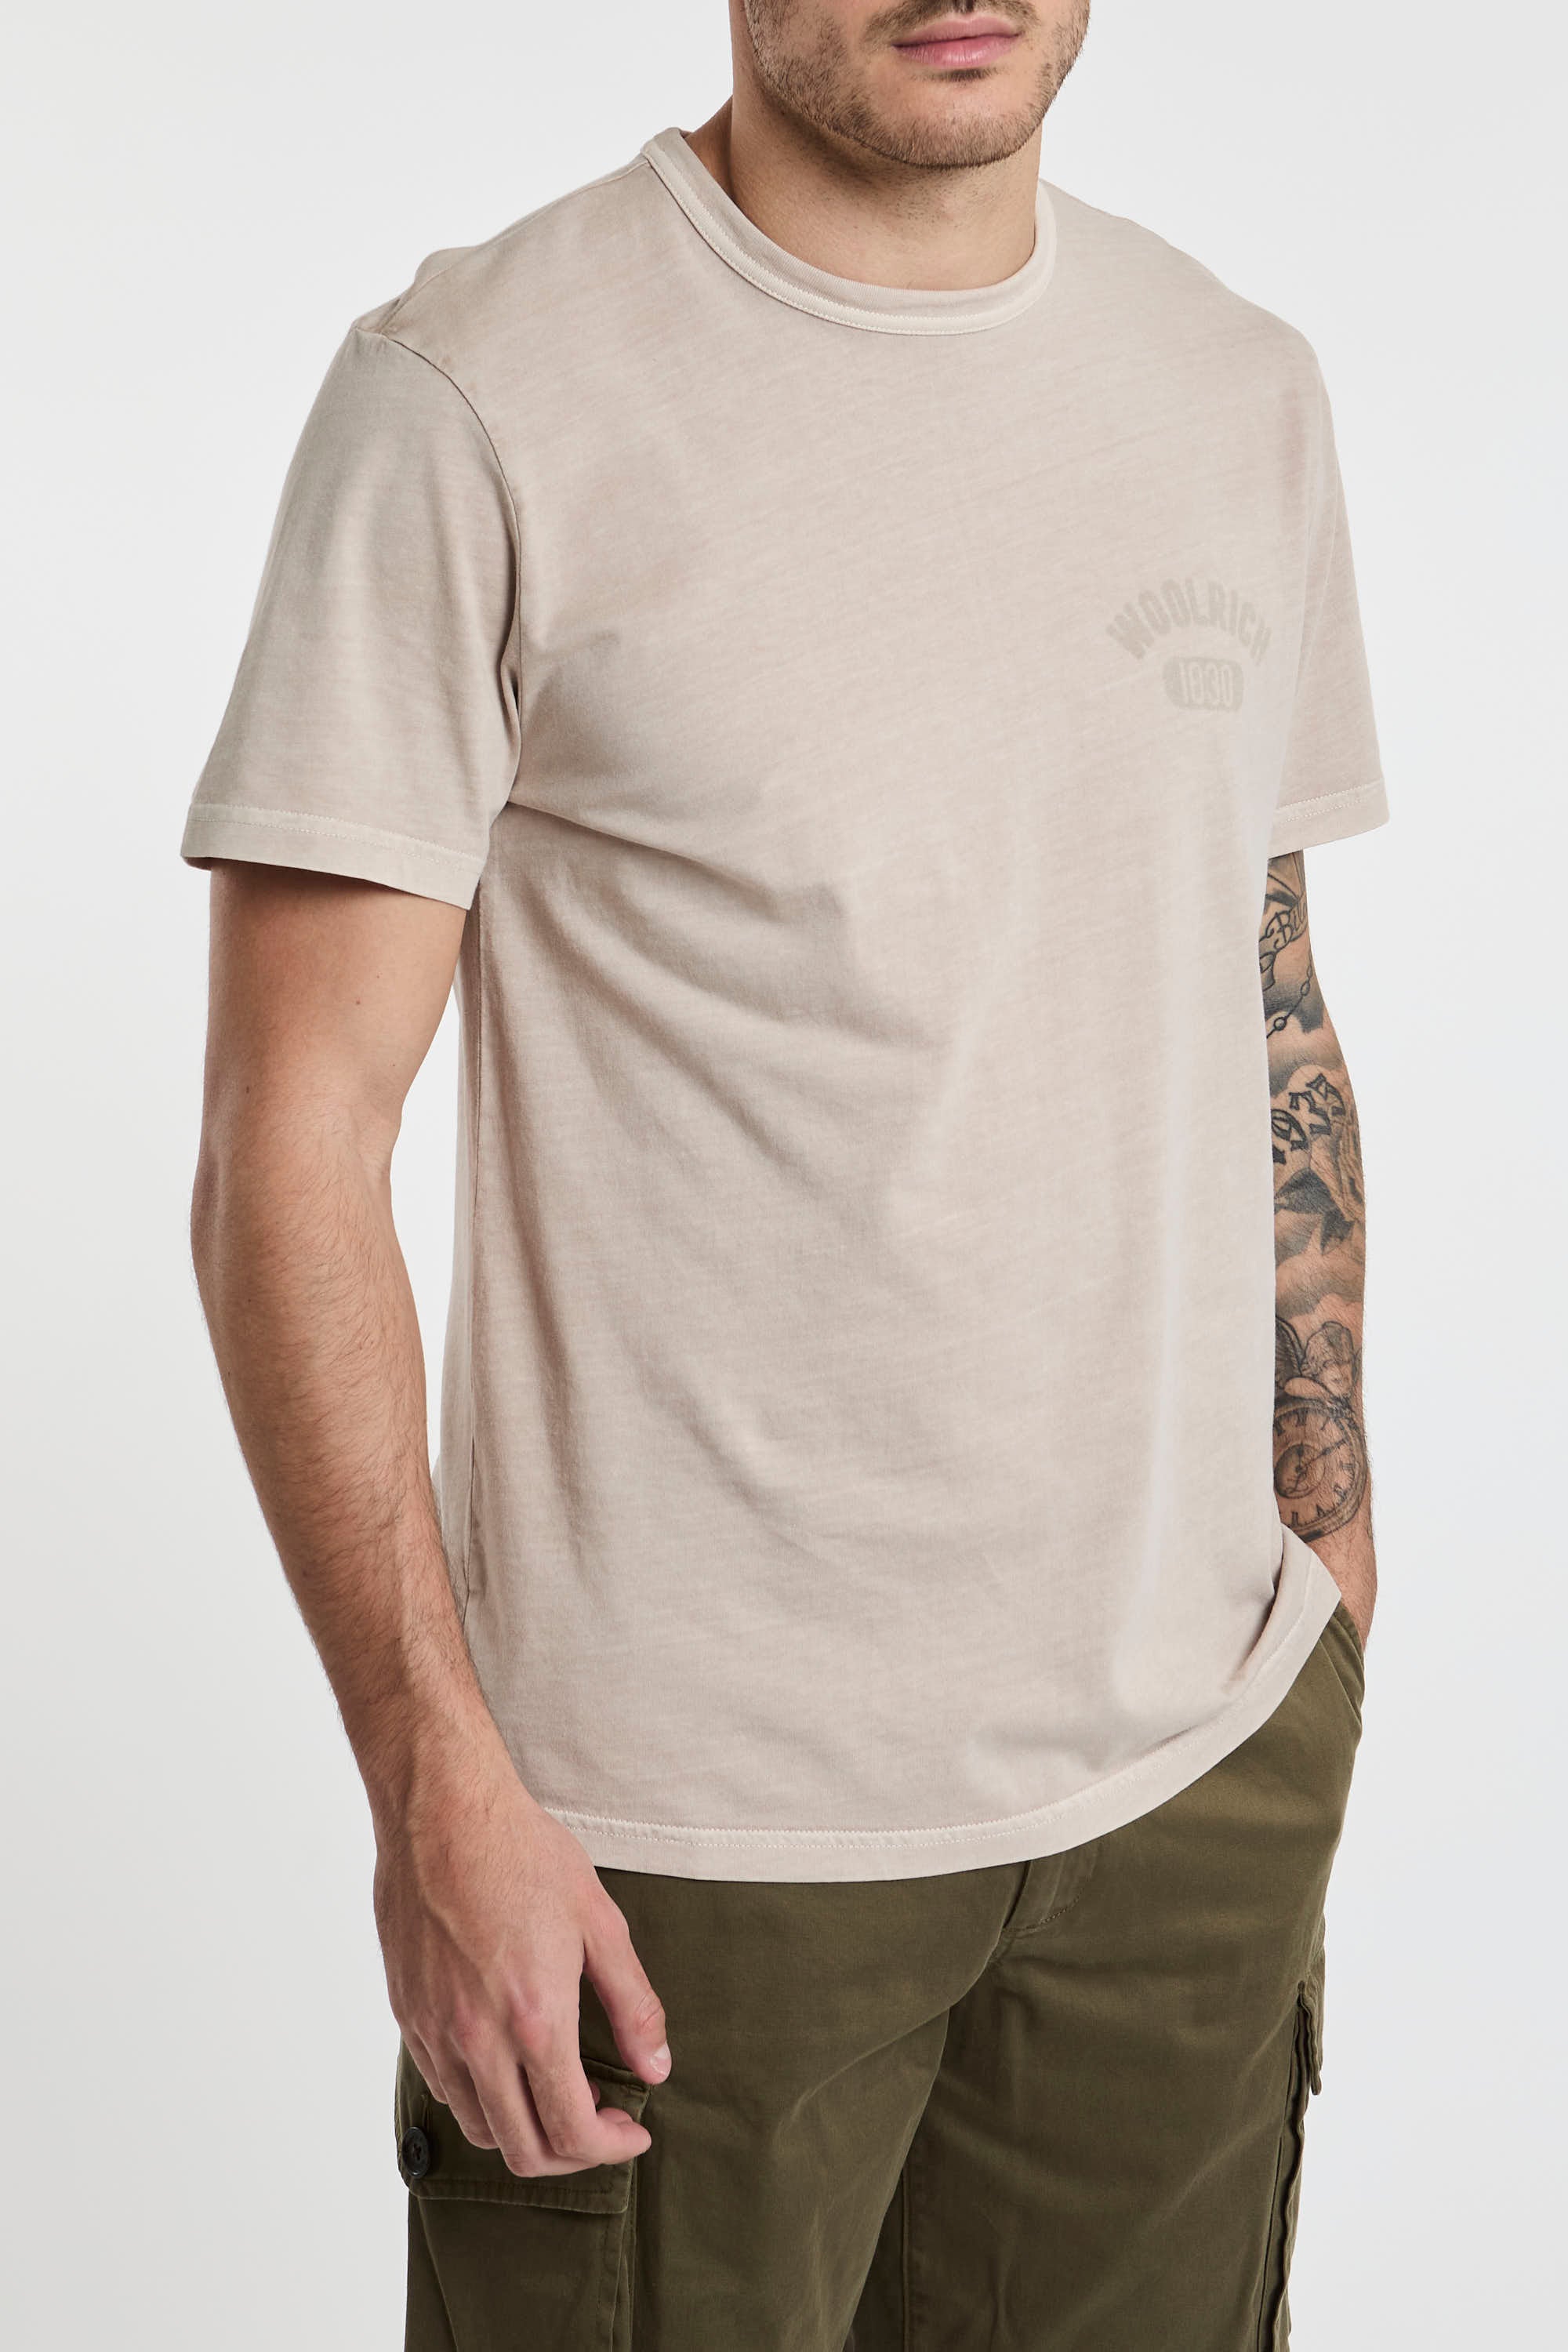 T-shirt tinta in capo in puro cotone-5